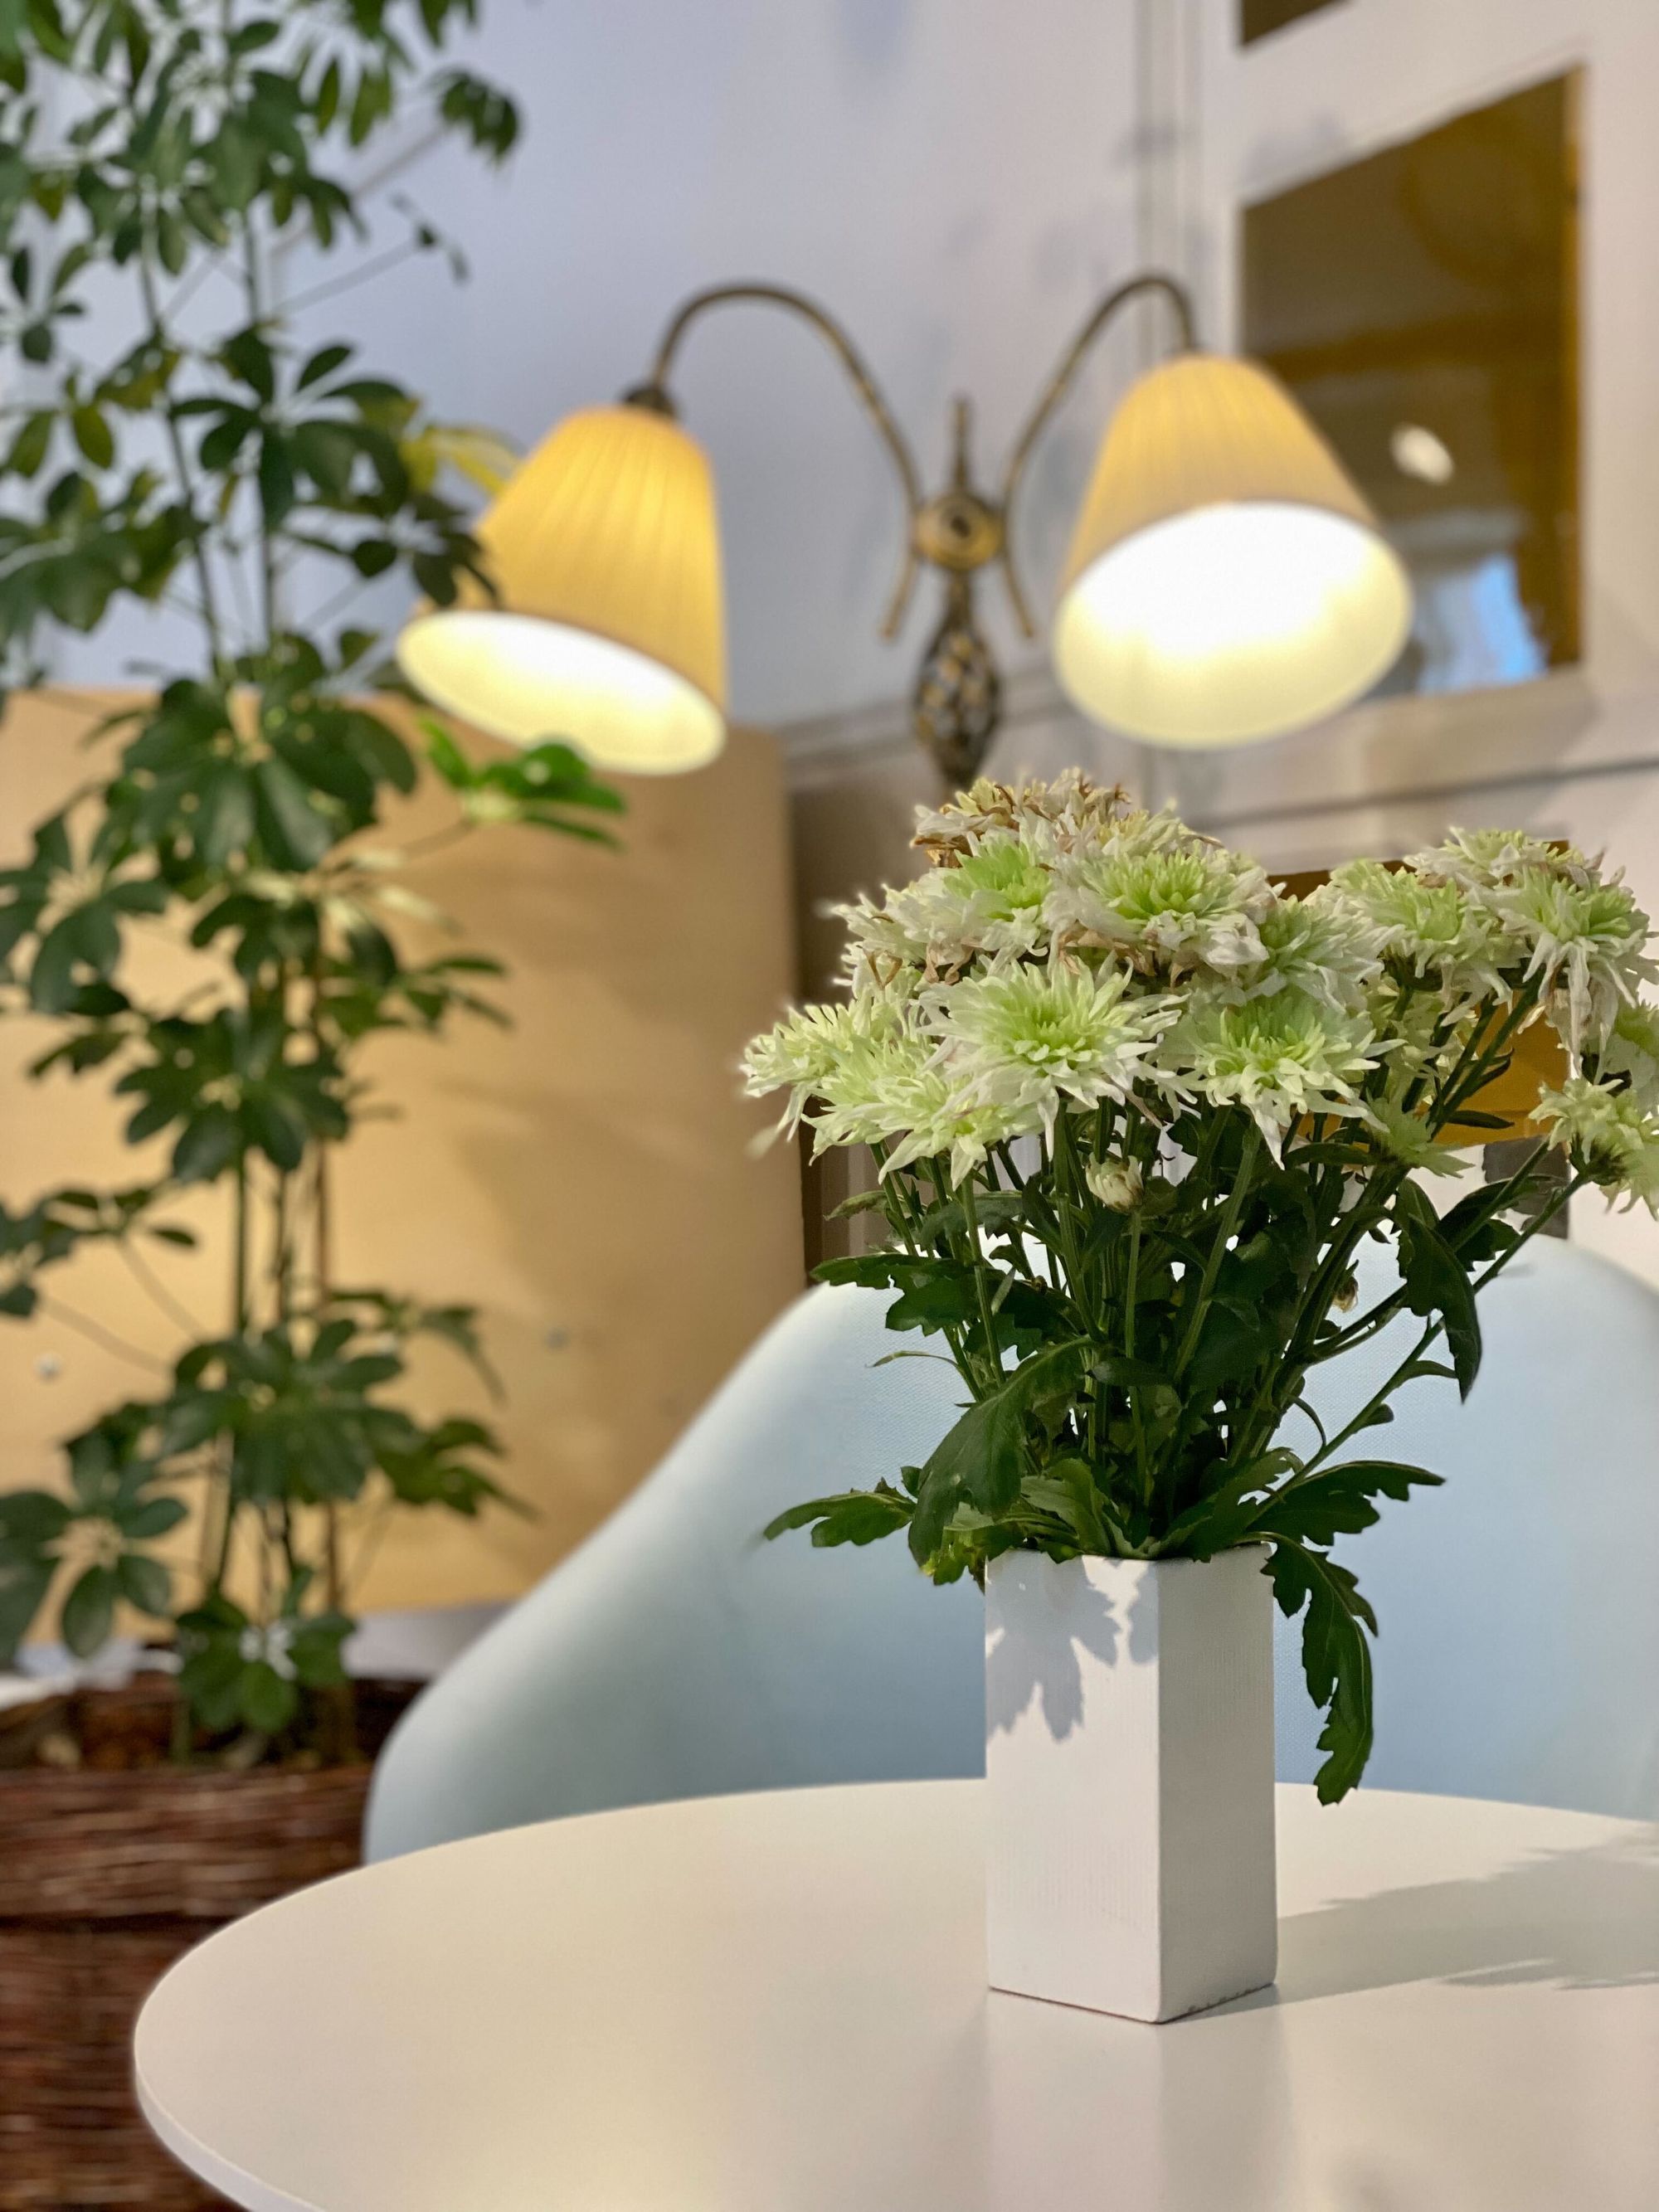 Fotölj och bord med blommor